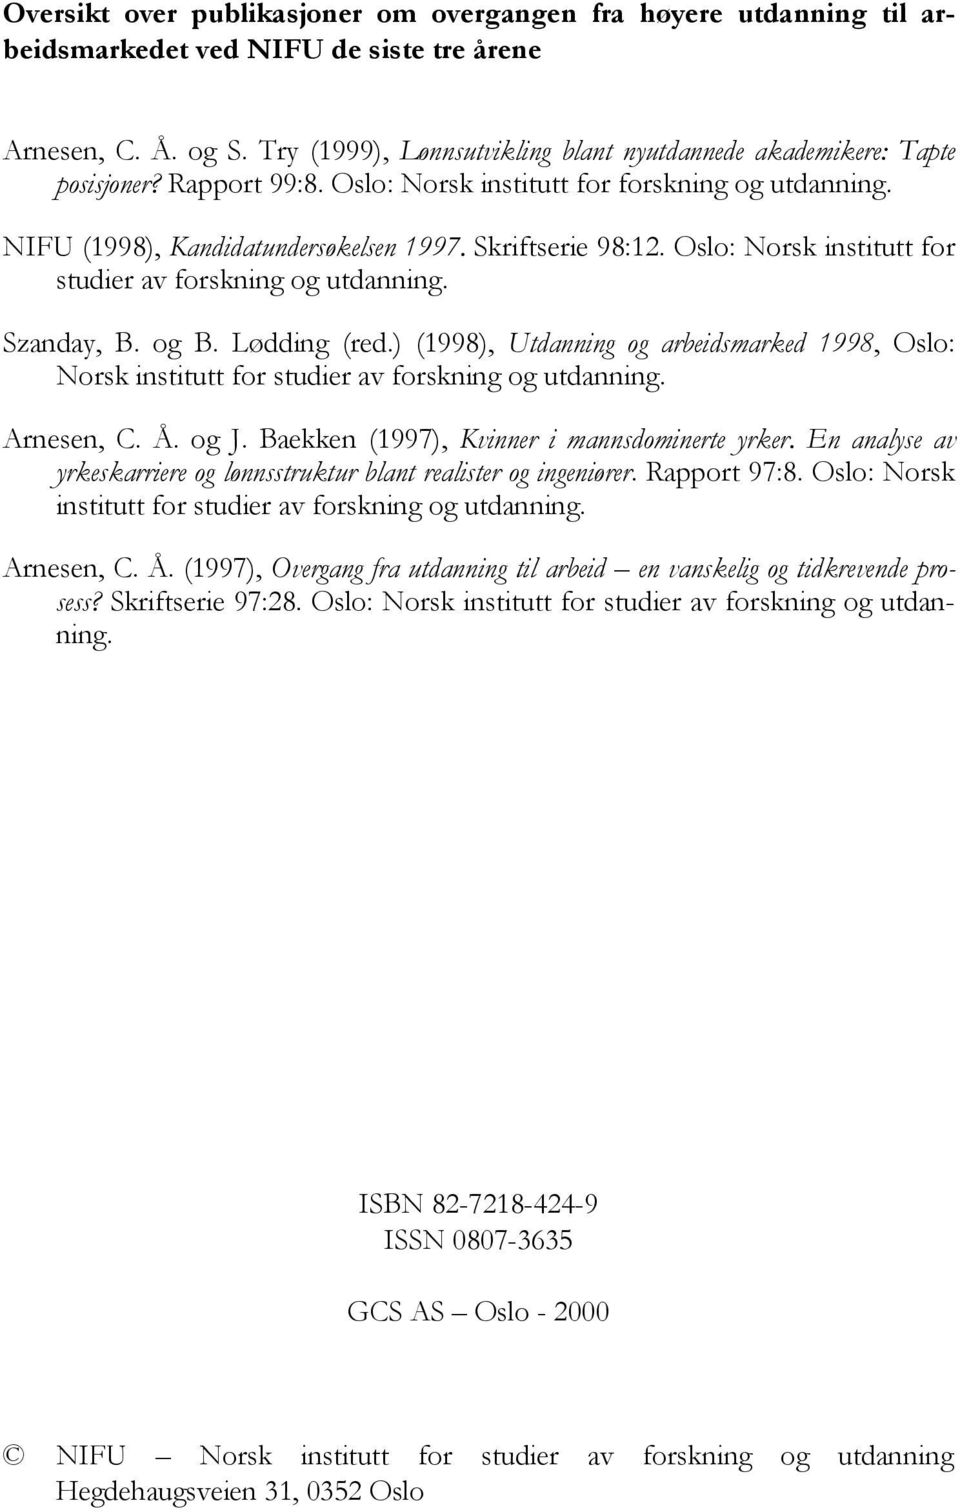 Oslo: Norsk institutt for studier av forskning og utdanning. Szanday, B. og B. Lødding (red.) (1998), Utdanning og arbeidsmarked 1998, Oslo: Norsk institutt for studier av forskning og utdanning.